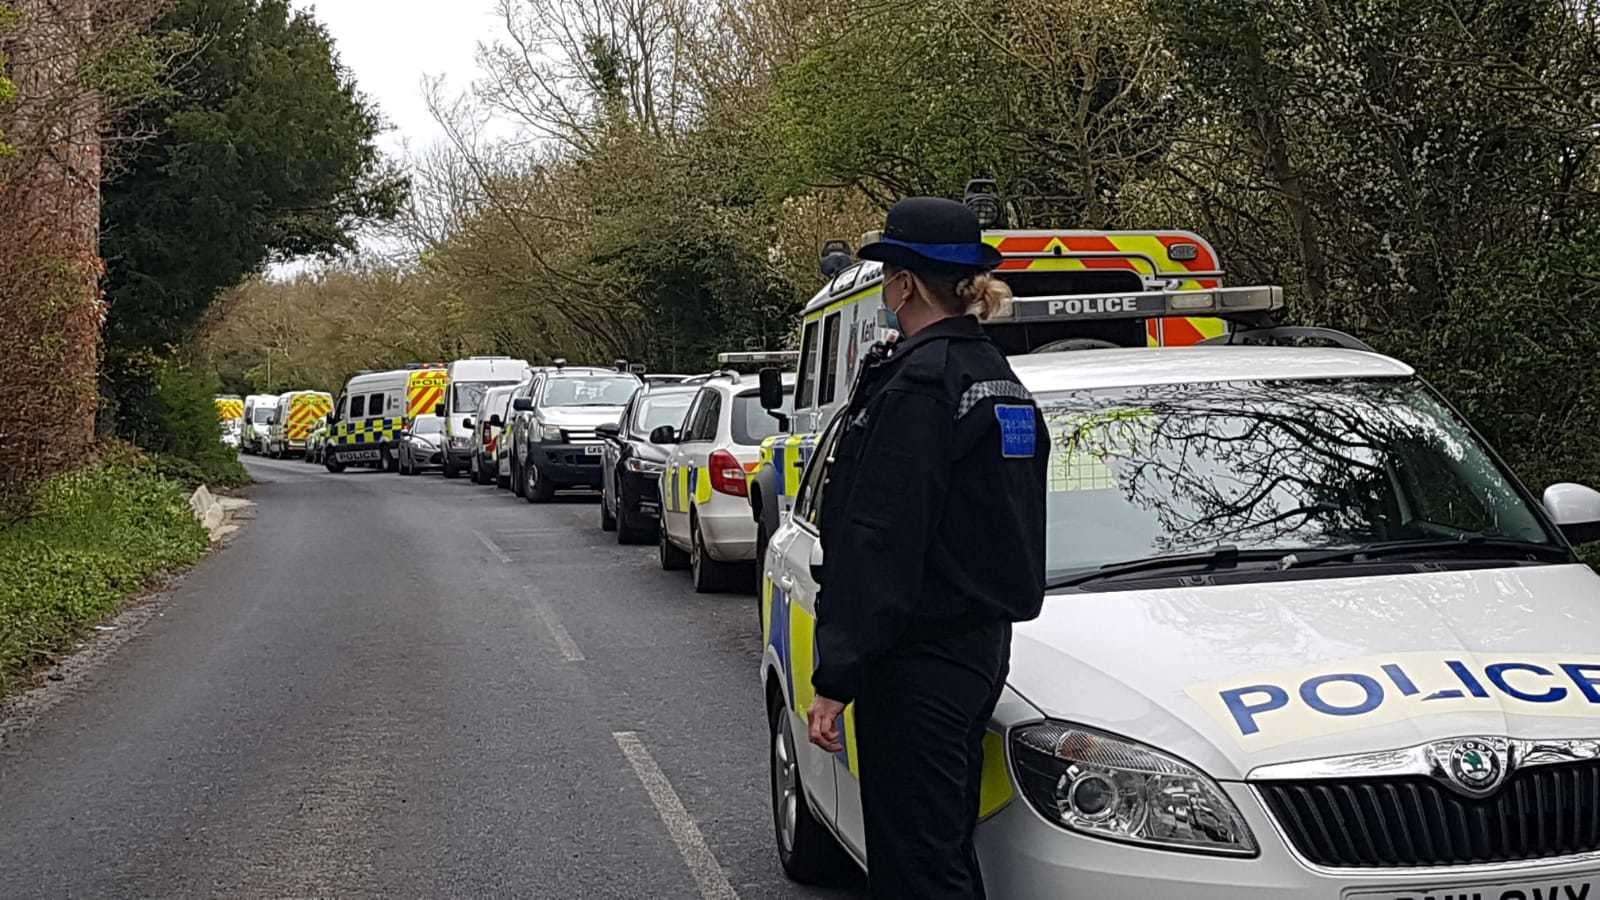 Police vehicles lined up along Aylesham Road